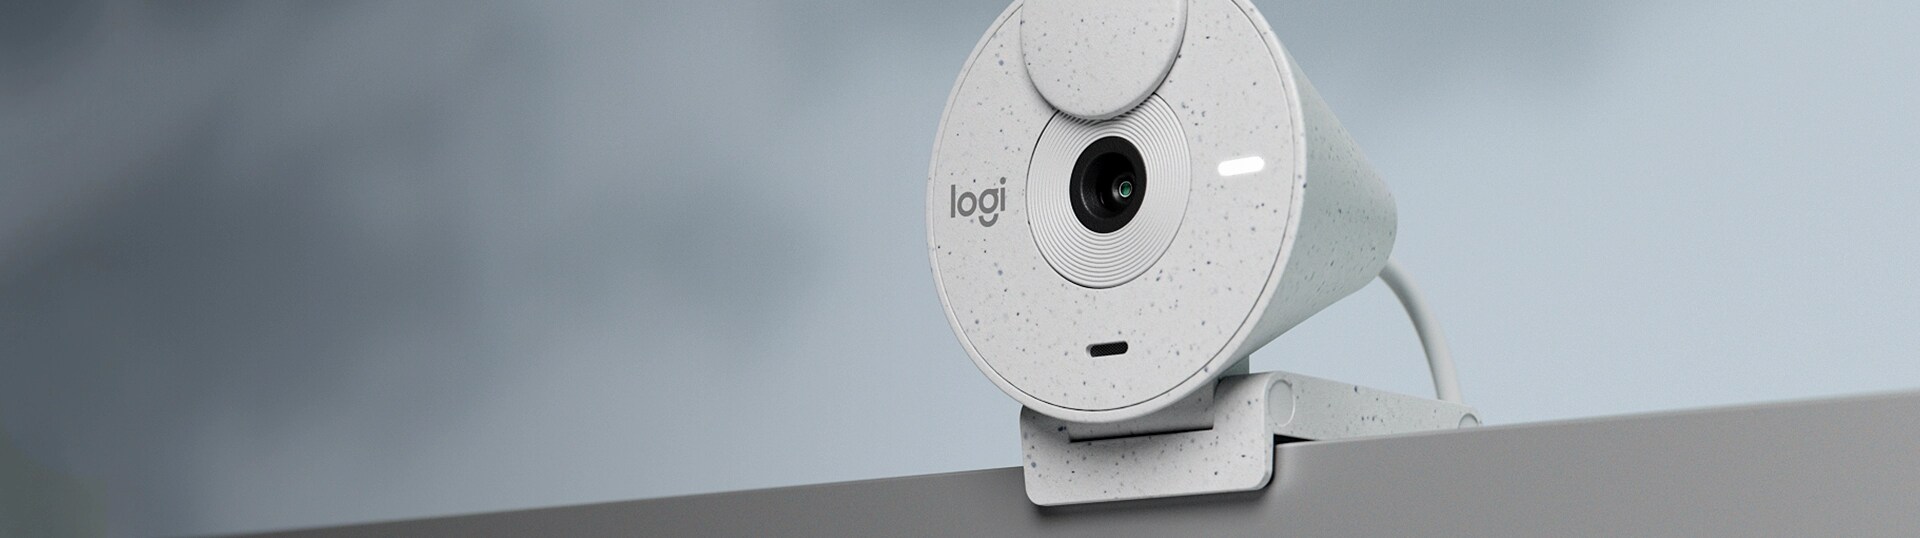 Logitech Brio 300 webcam